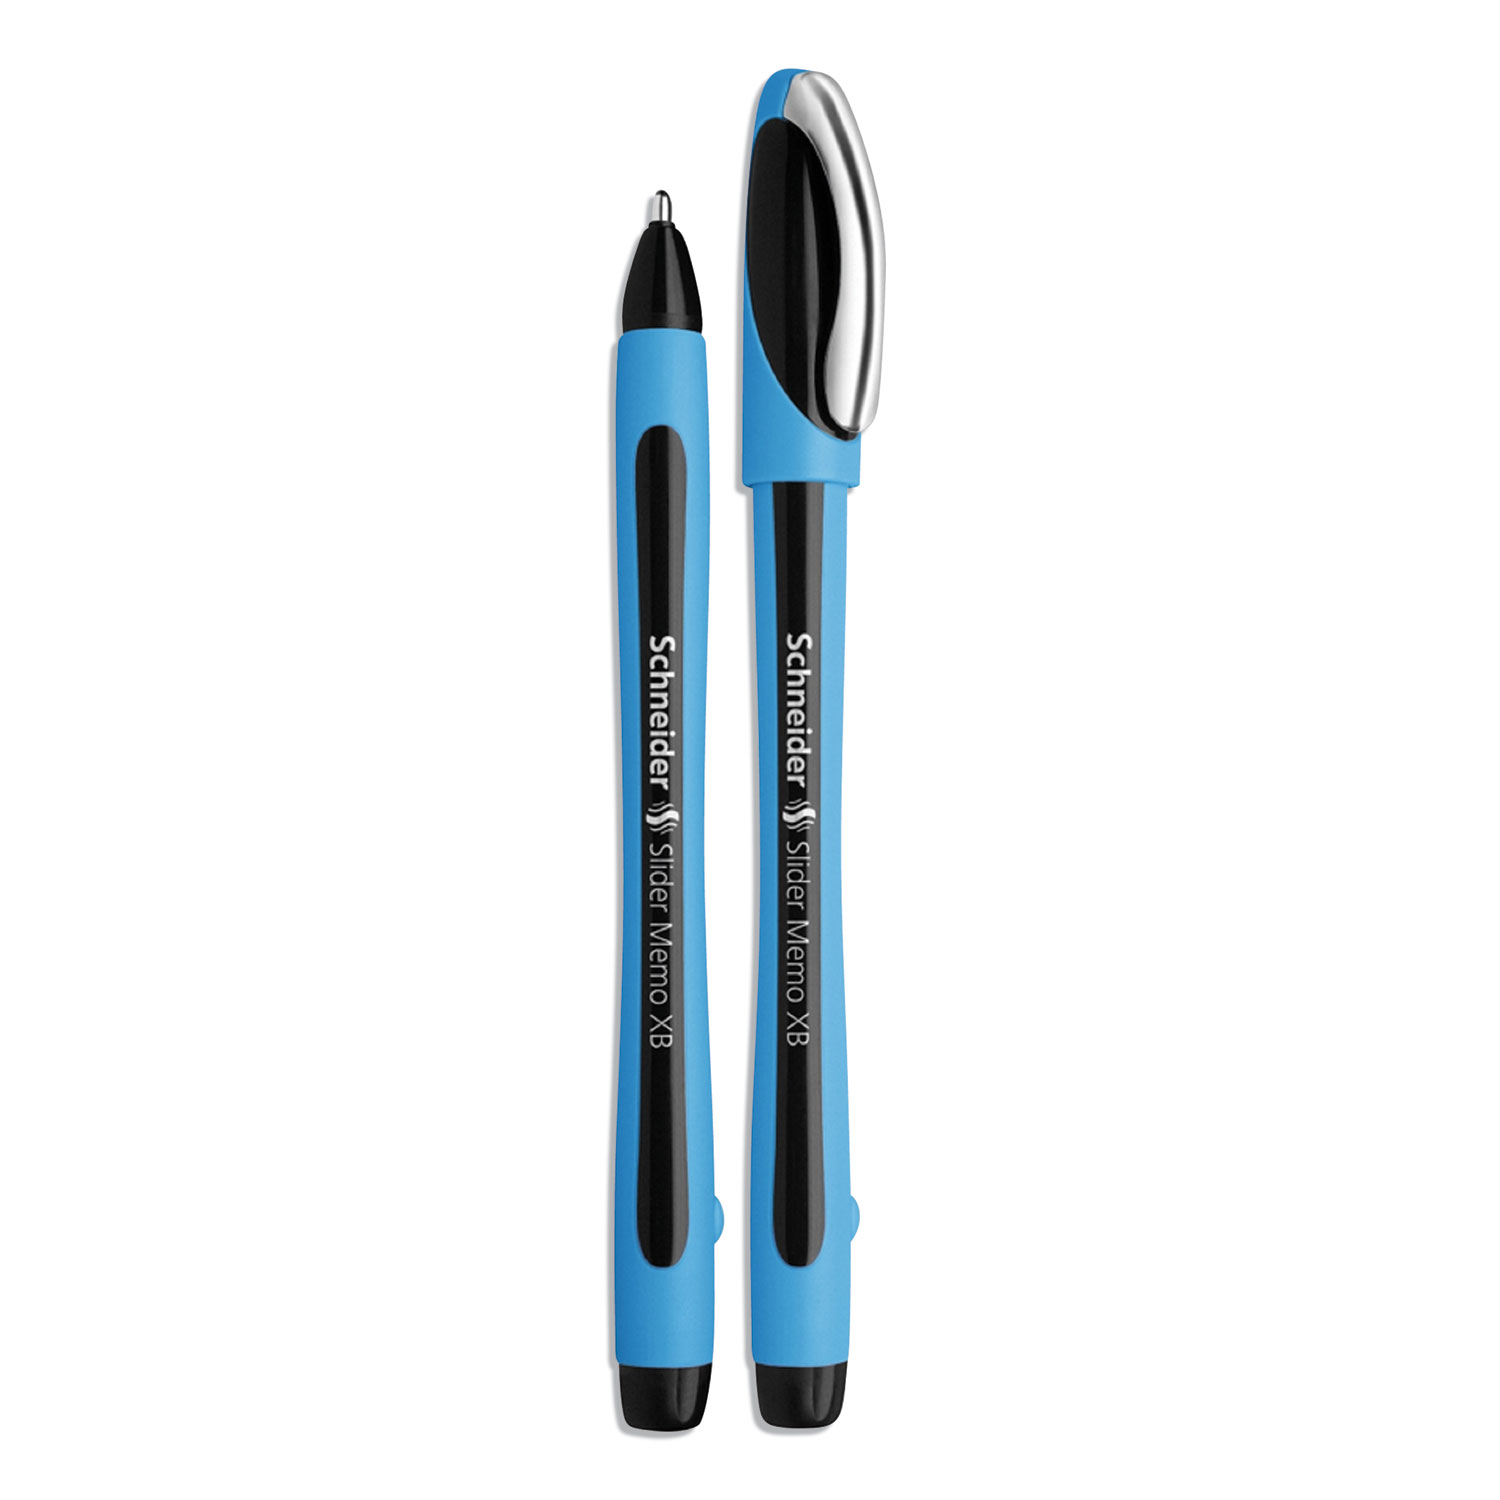  Stride 150201 Schneider Slider Memo XB Stick Ballpoint Pen, 1.4 mm, Black Ink, Blue/Black Barrel, 10/Box (STW150201) 